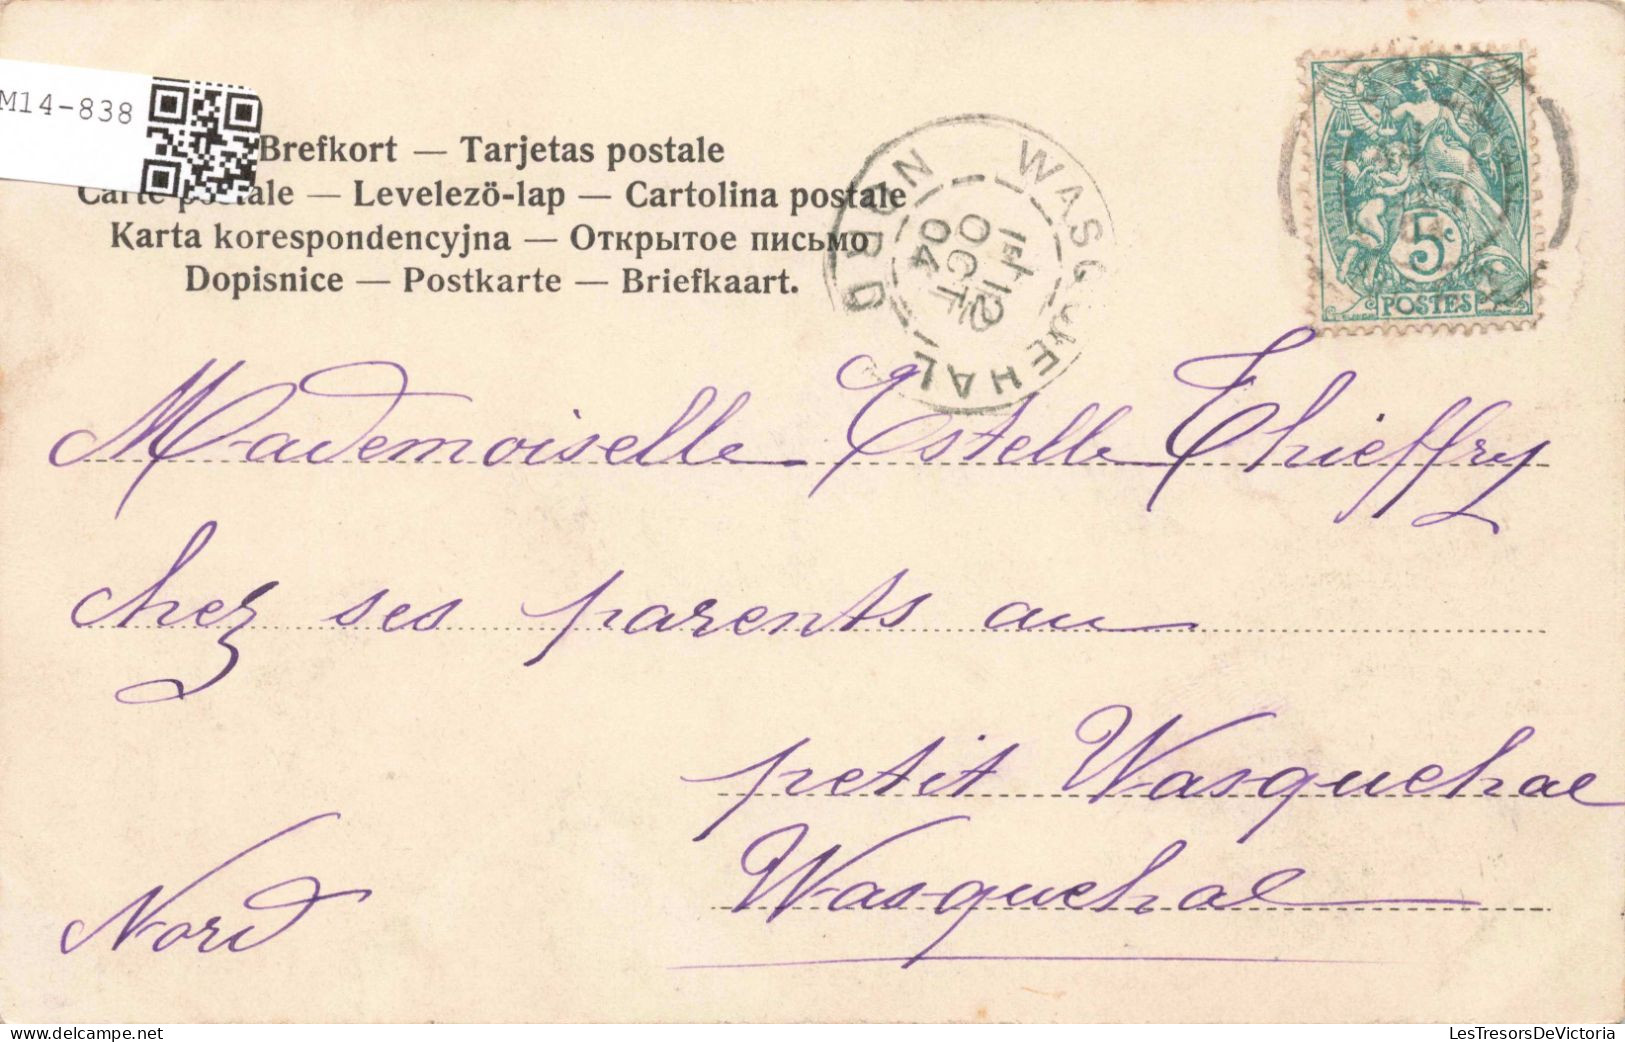 TRANSPORTS - Bateaux - Port - Bateaux De Pêche - Carte Postale  Ancienne - Pesca